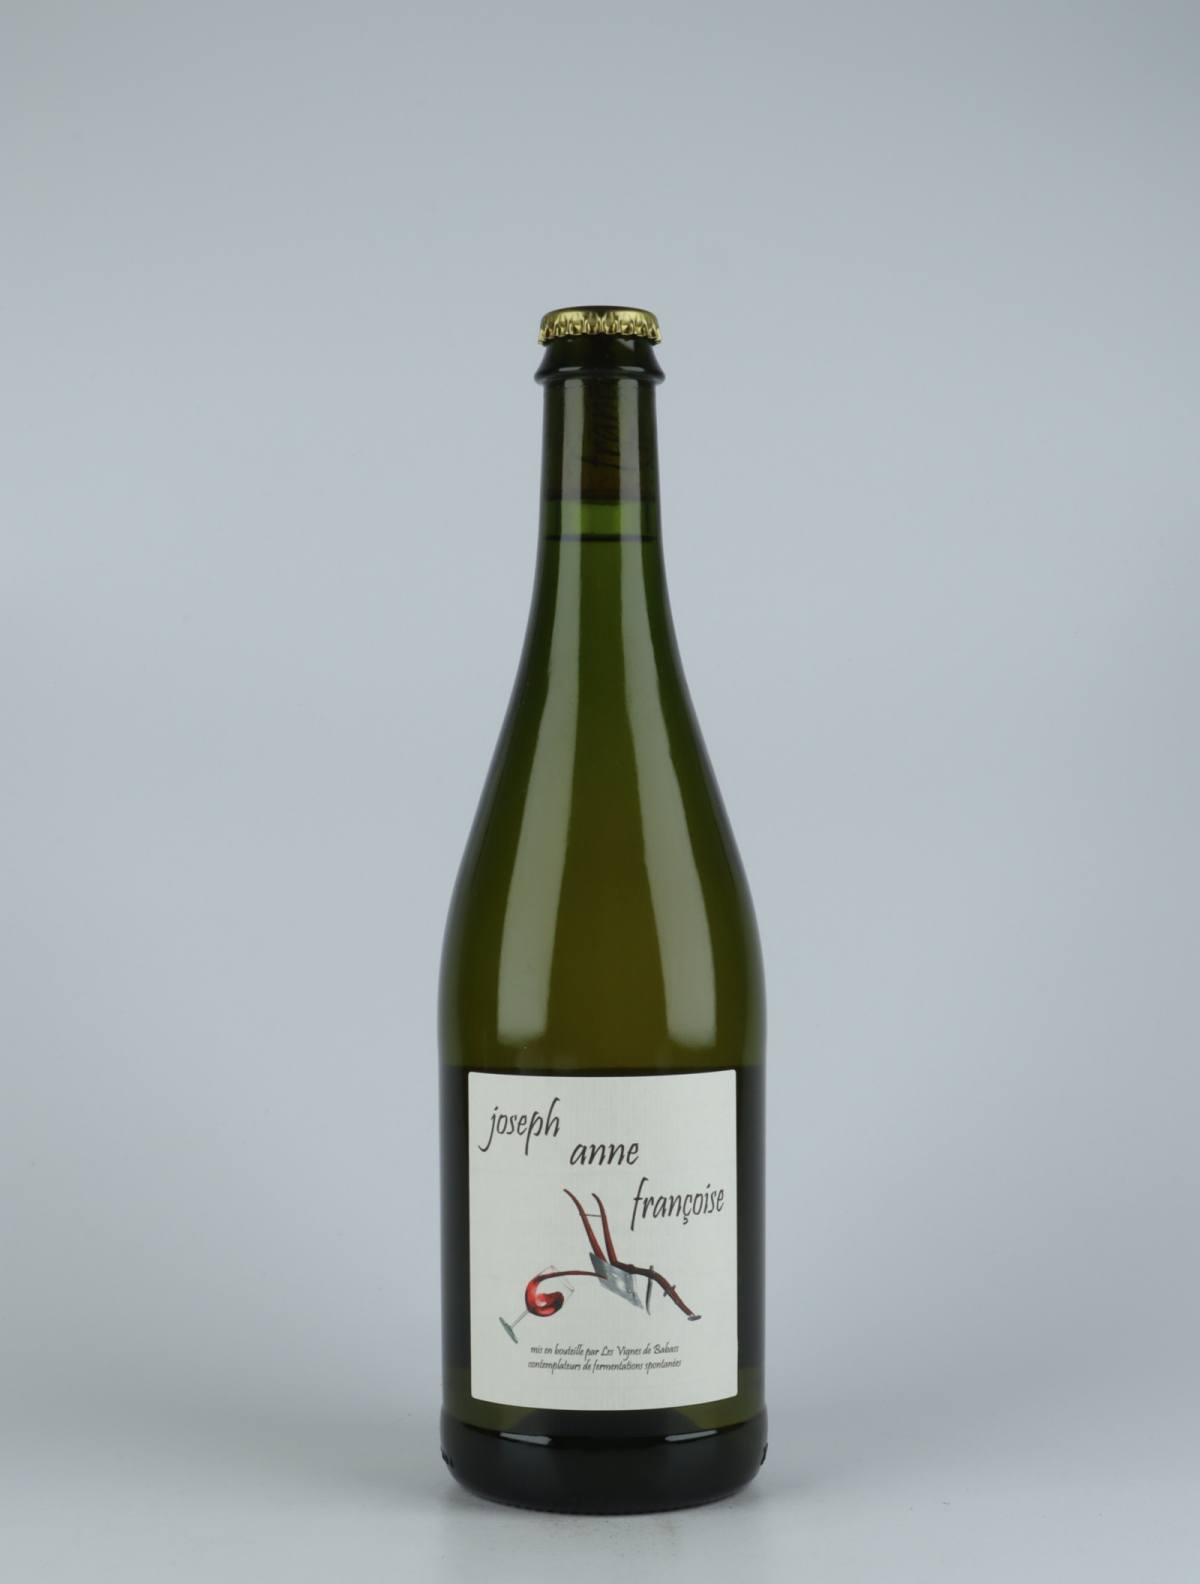 A bottle 2018 Joseph Anne Françoise White wine from Les Vignes de Babass, Loire in France